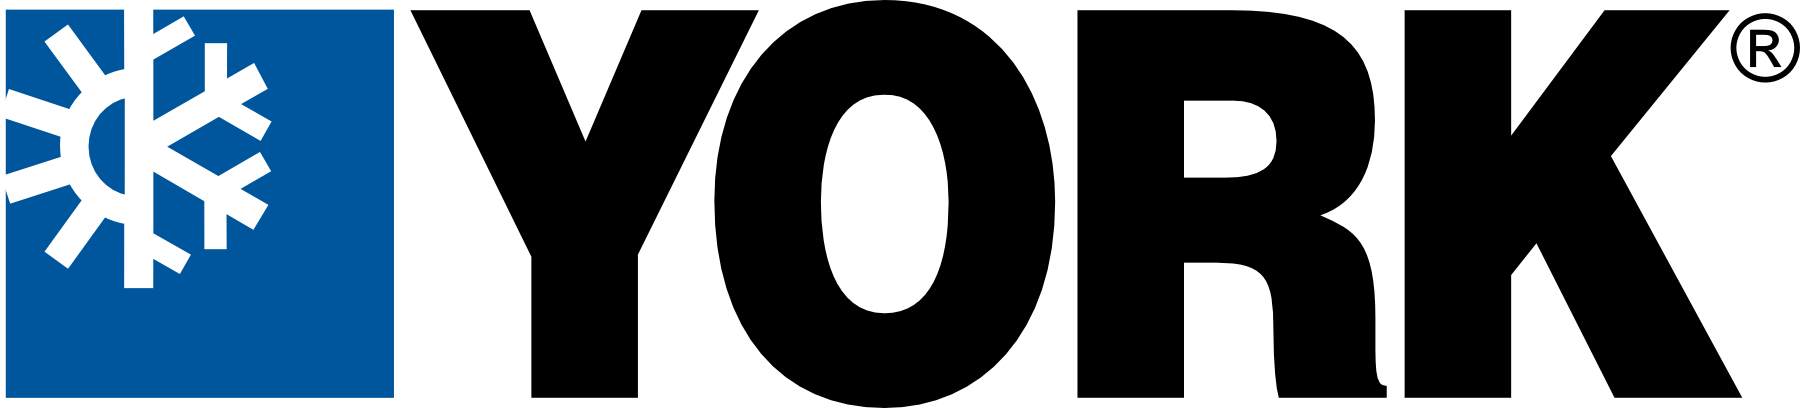 Logotipo de York